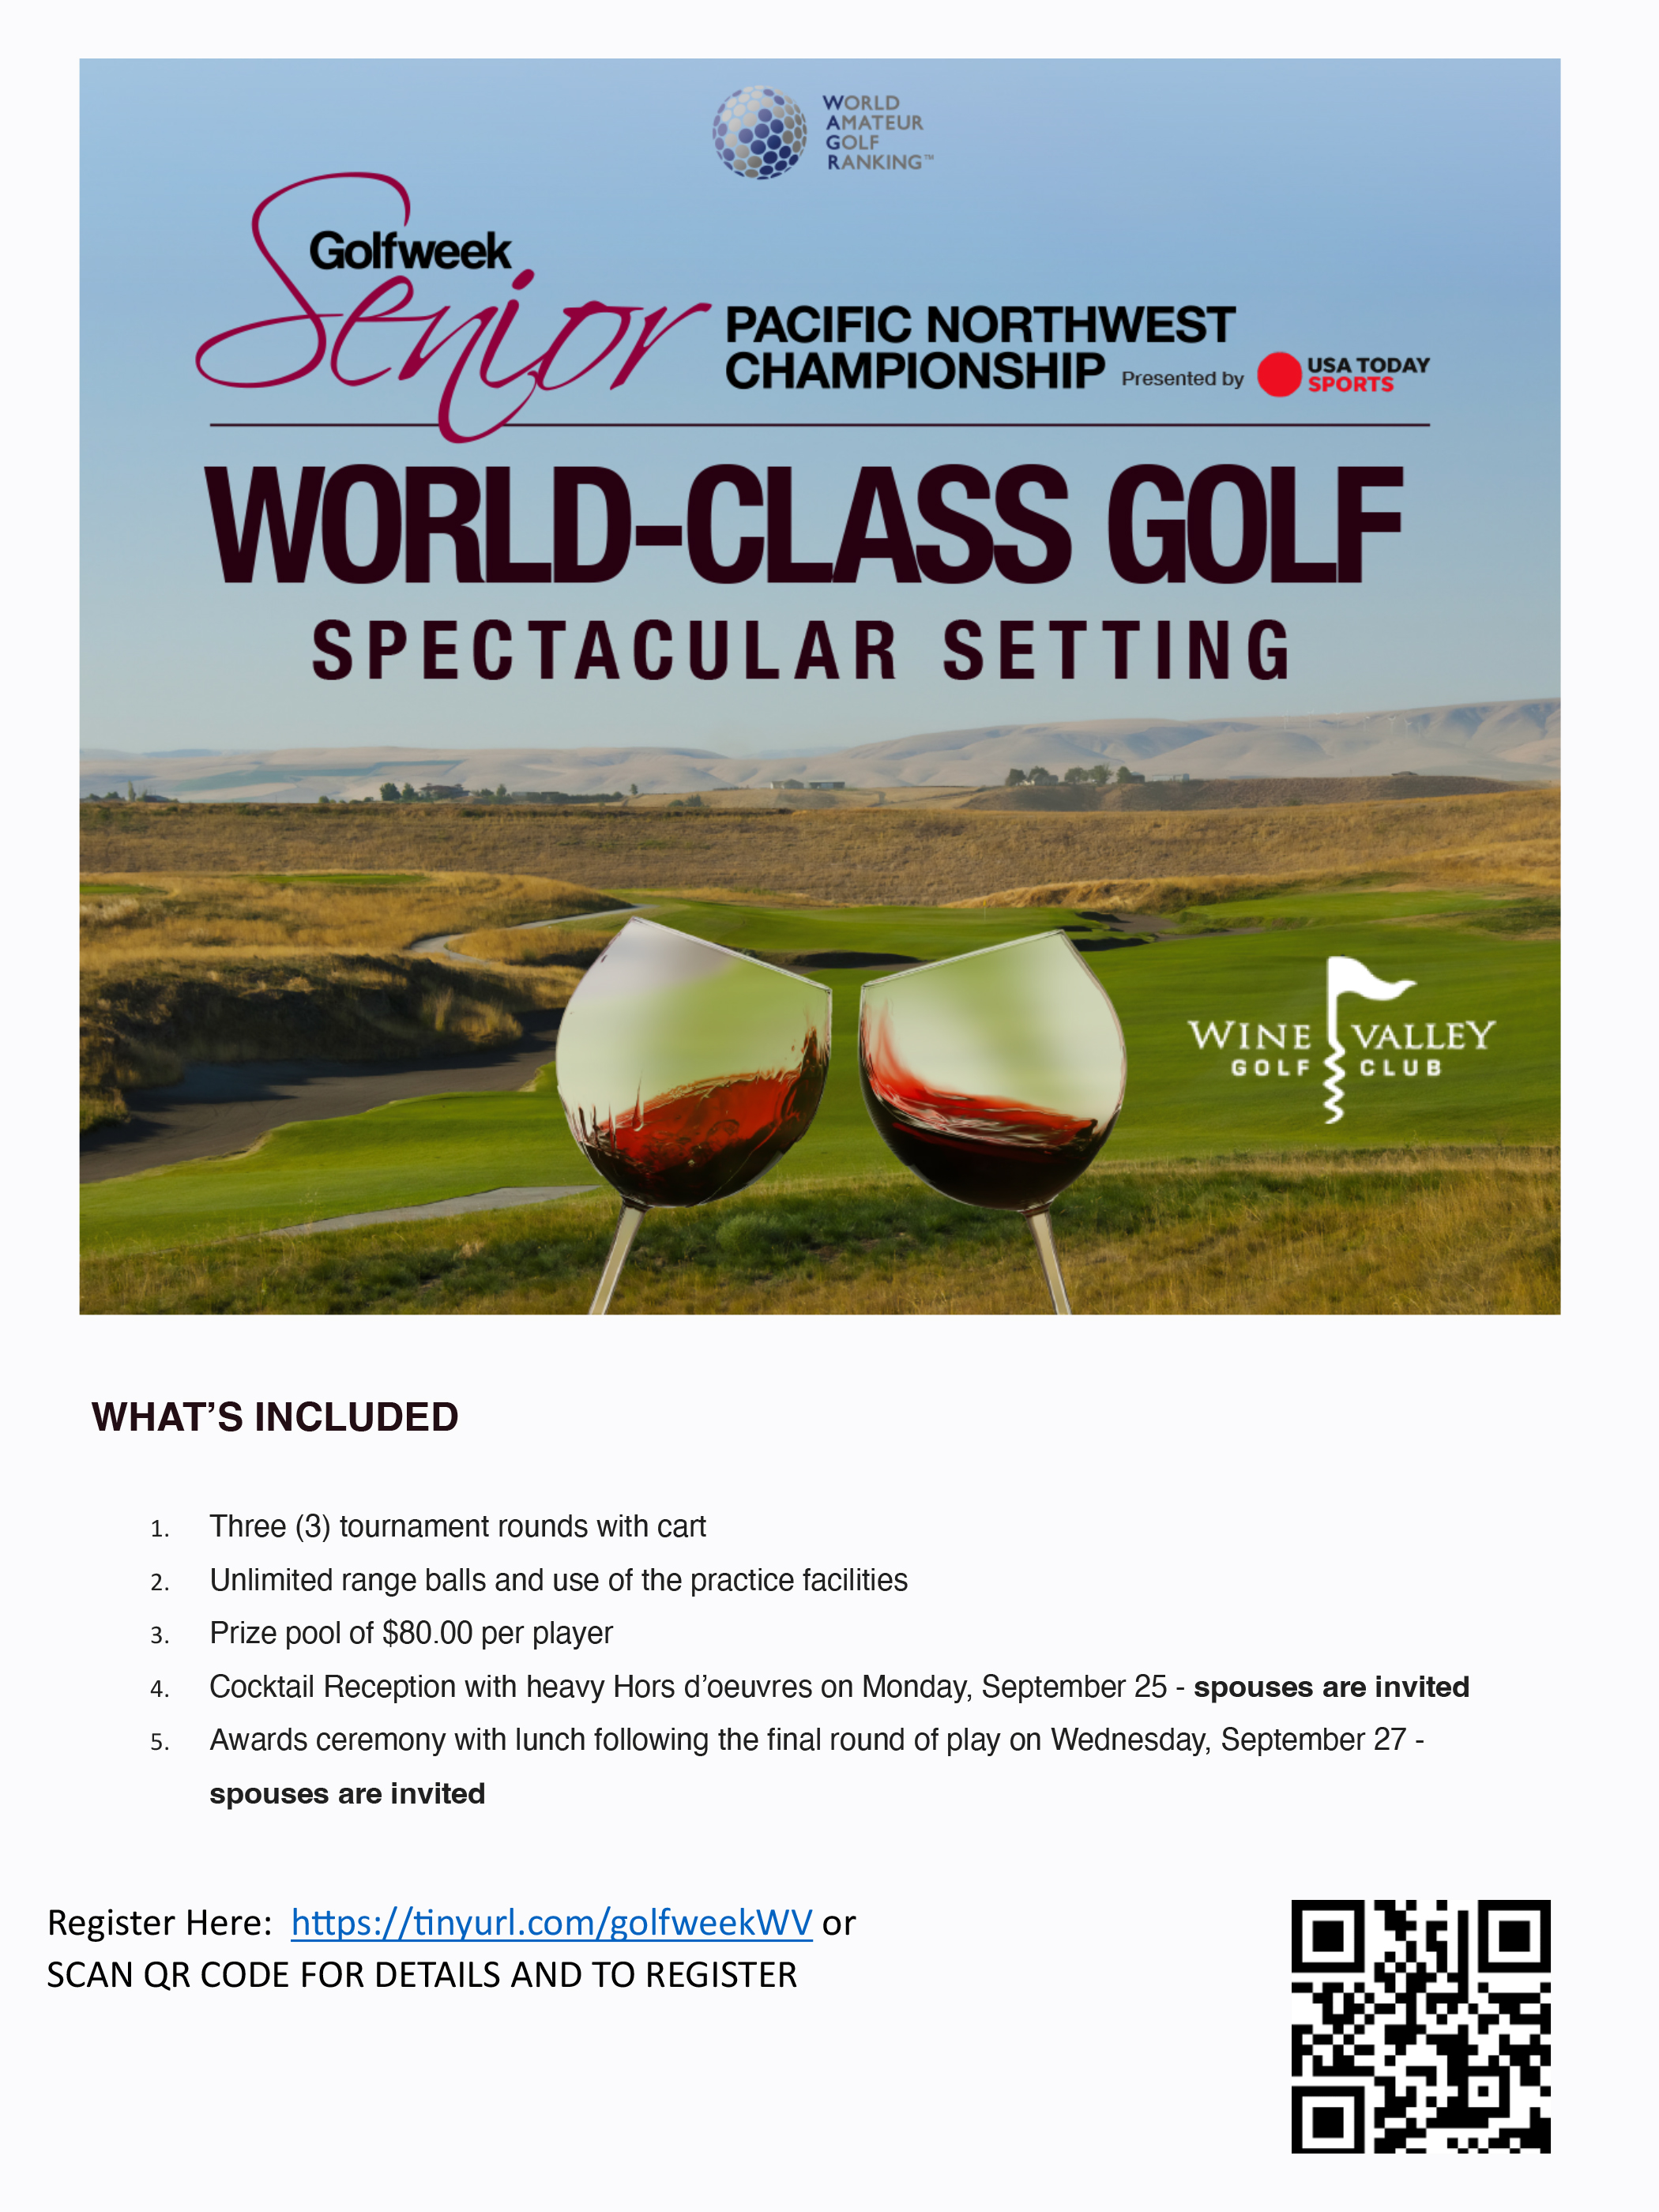 WV Senior AM Golf Week Flyer 1 copy